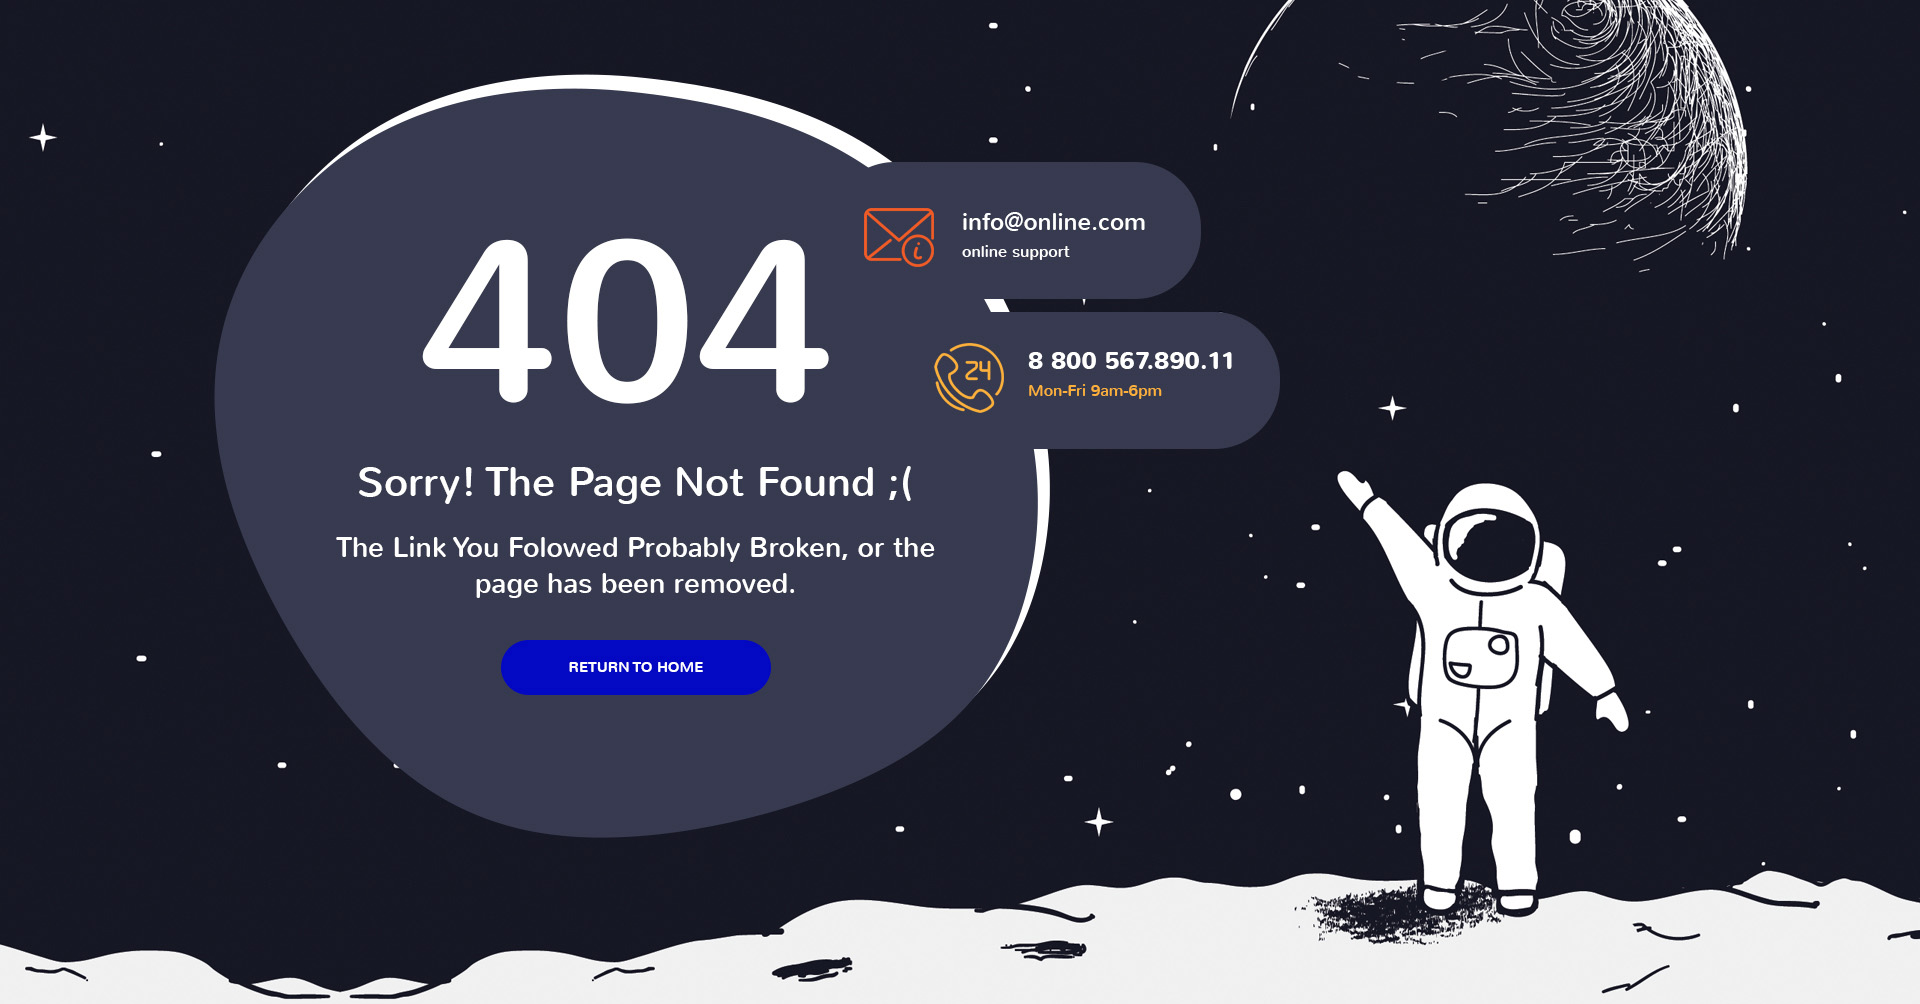 5个非常高端时尚创意的404无数据页面banner设计模板